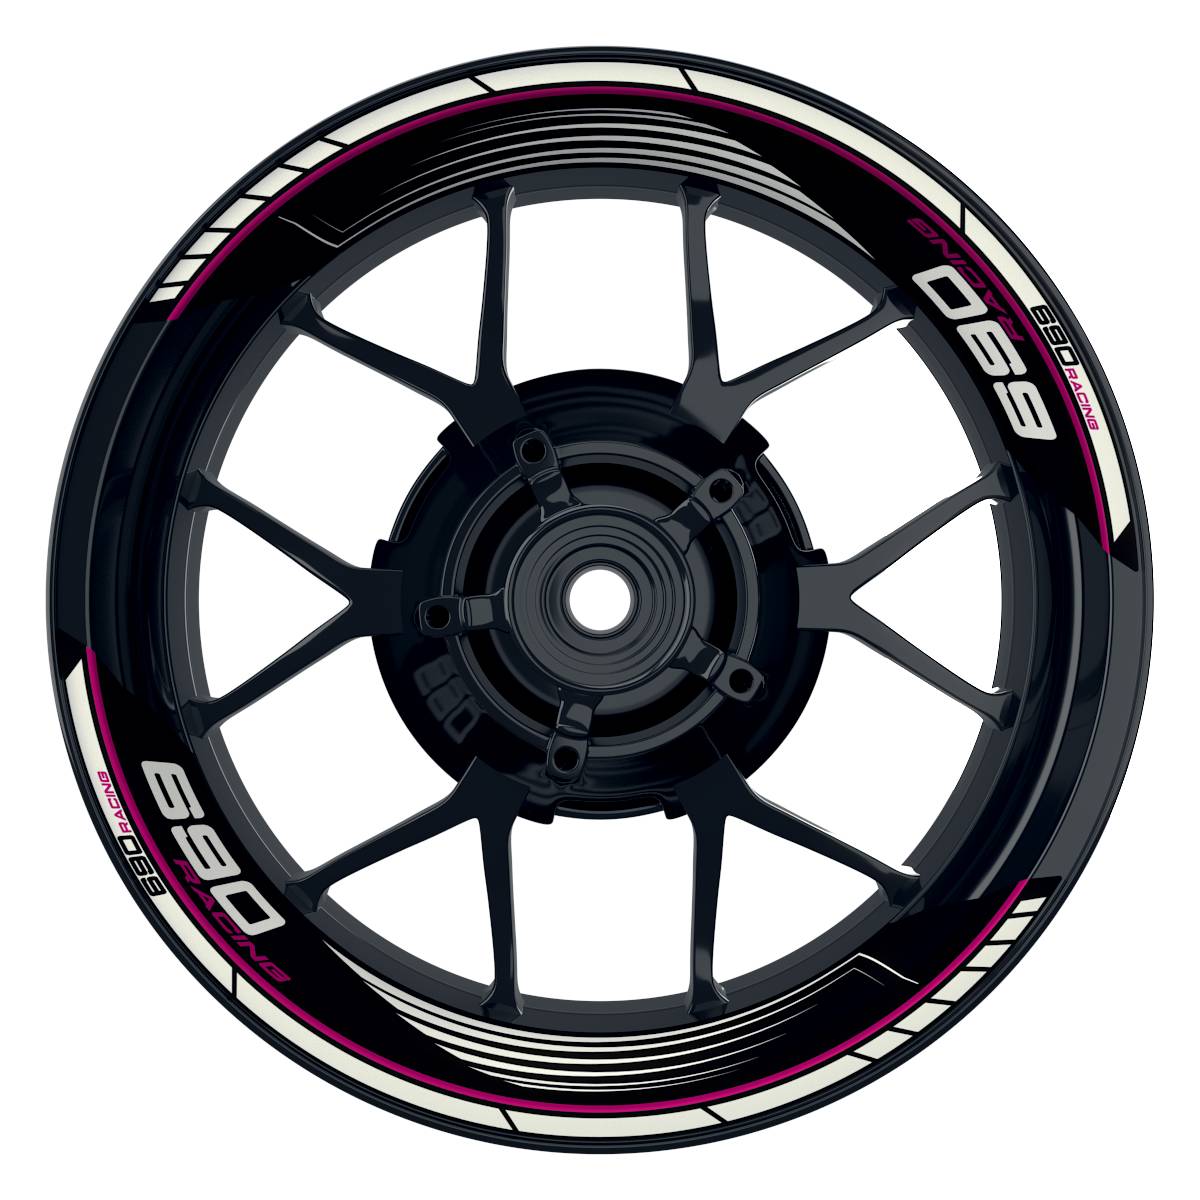 KTM Racing 690 SAW schwarz pink Frontansicht